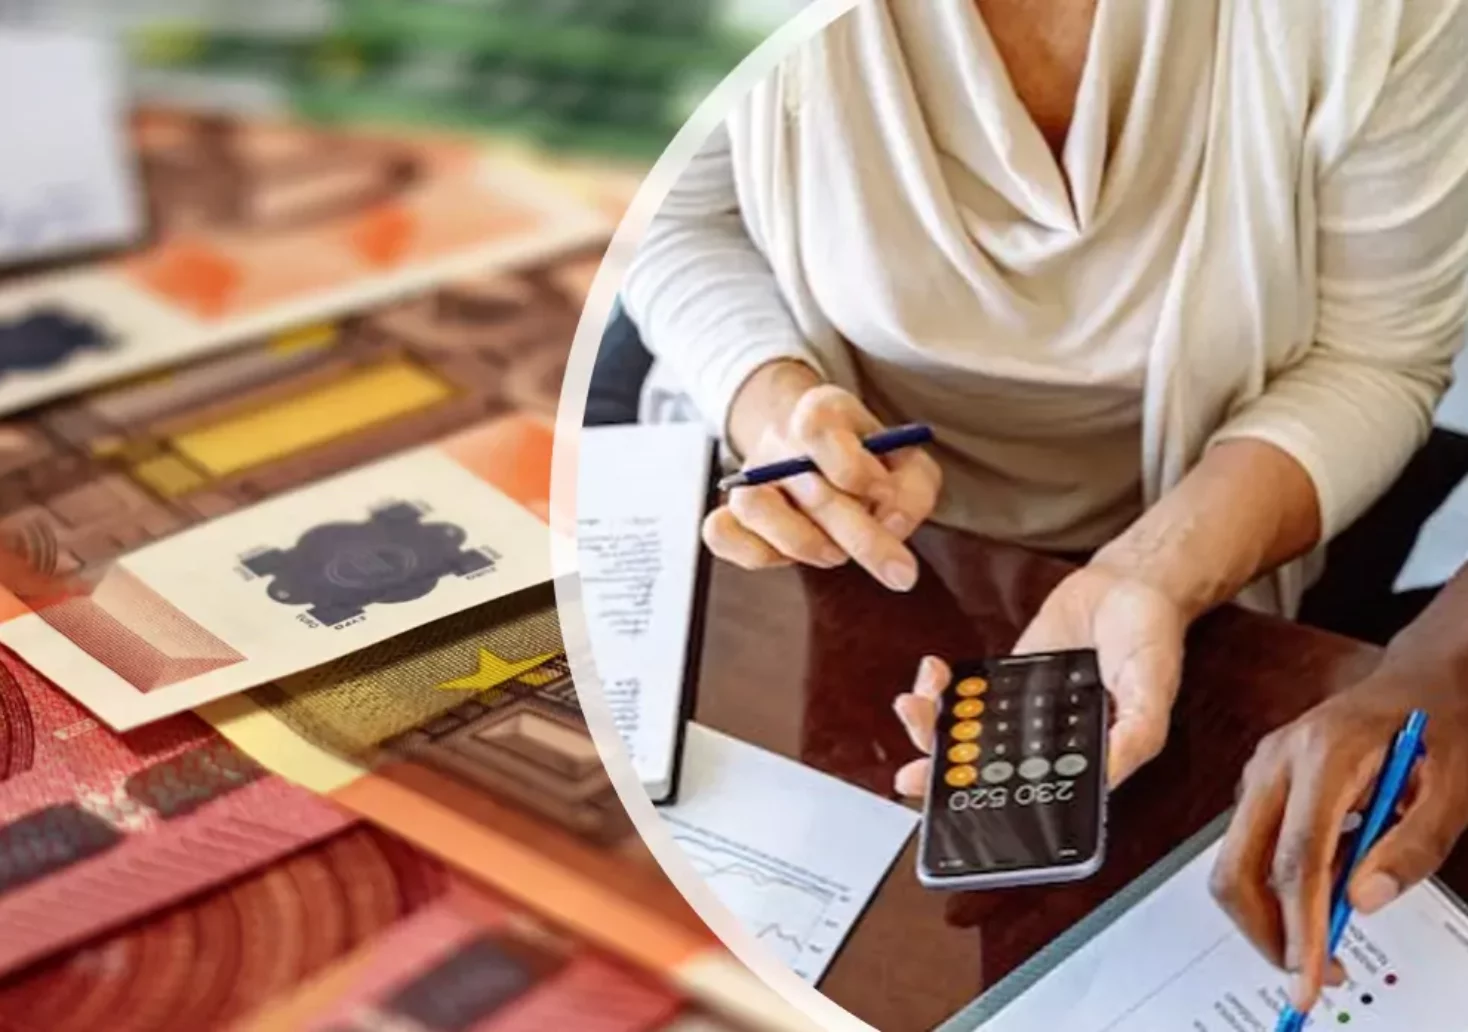 Foto in Beitrag von 5min.at: Zu sehen ist eine Frau, die mit einem Taschenrechner was nachrechnet und im Hintergrund einiges an Papiergeld.